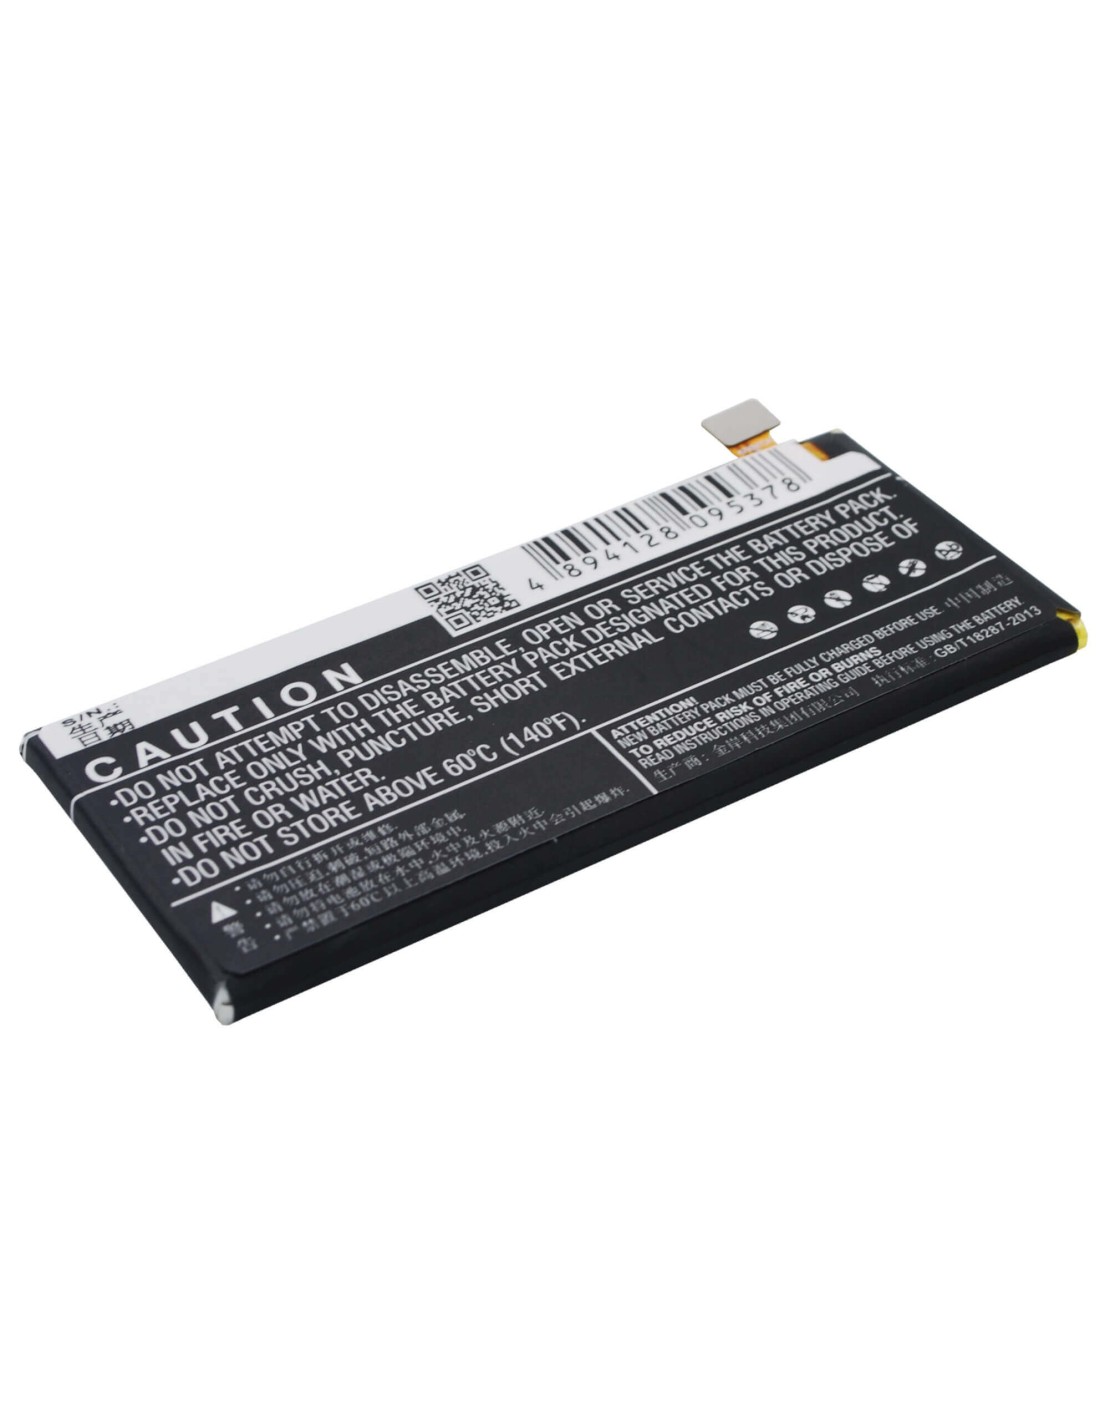 Battery for Huawei Ascend G660, Ascend G660-L75, Ascend G660-L075 3.8V, 2300mAh - 8.74Wh